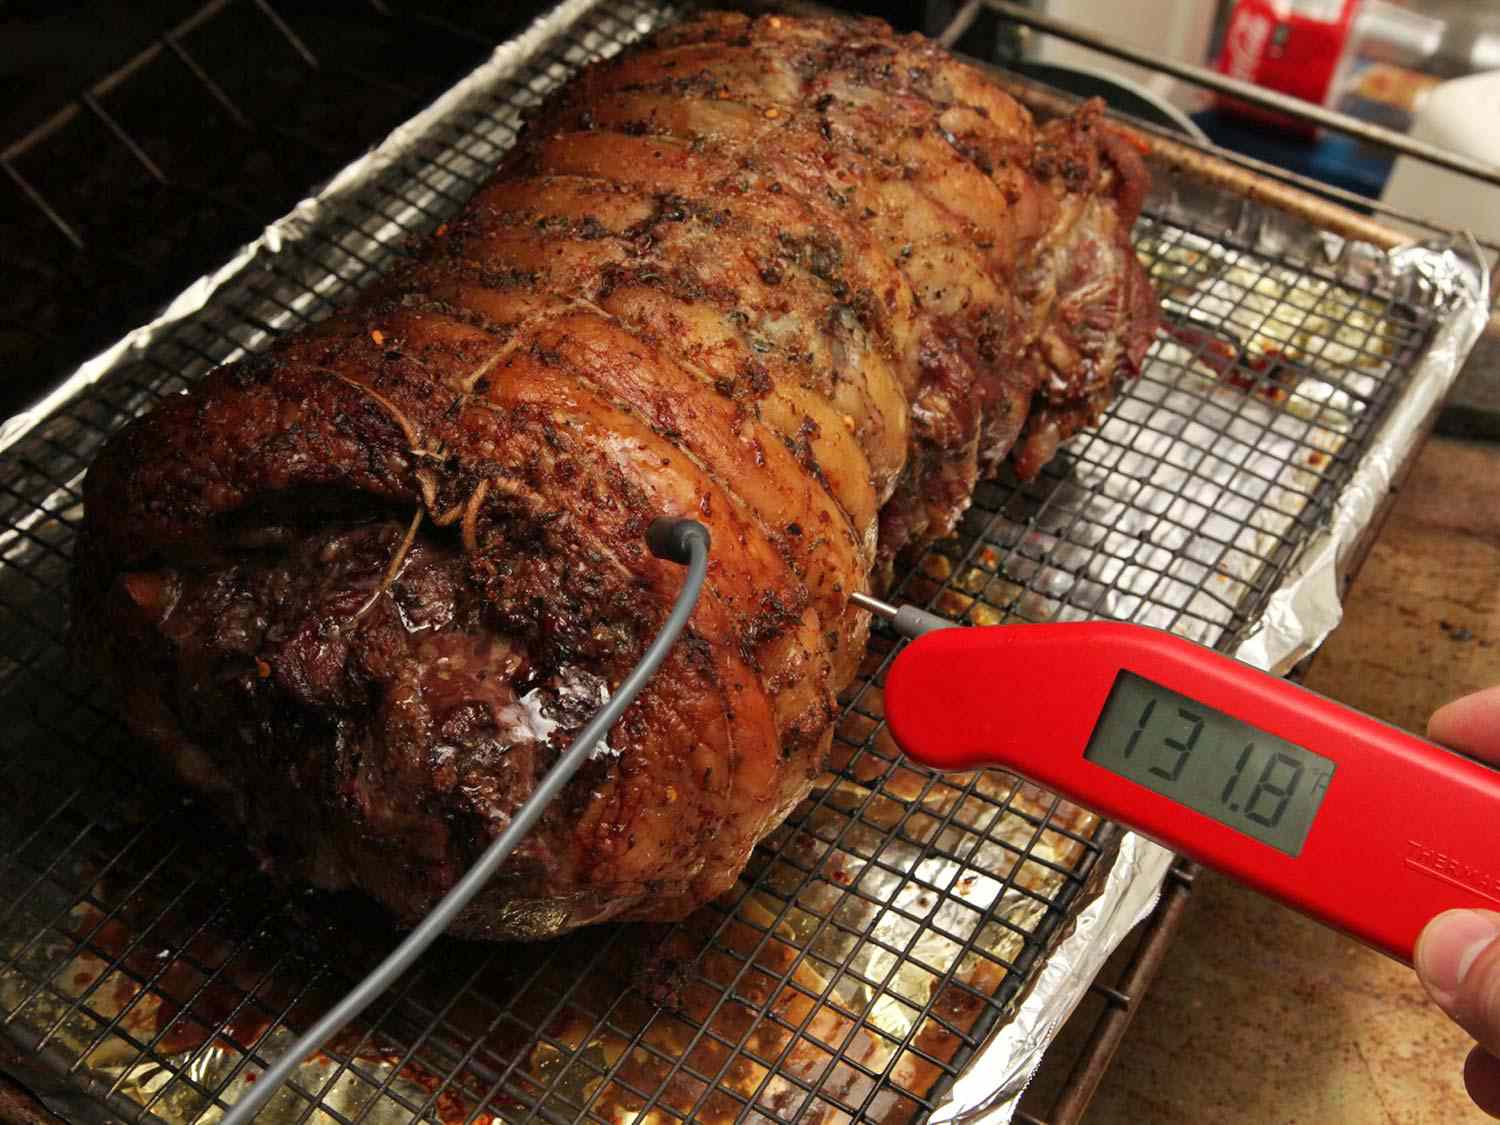 无骨羊腿:放在铁丝架上衬有锡箔的带边烤盘上的无骨、捆扎的羊腿即时读数的温度计显示华氏131.8度。